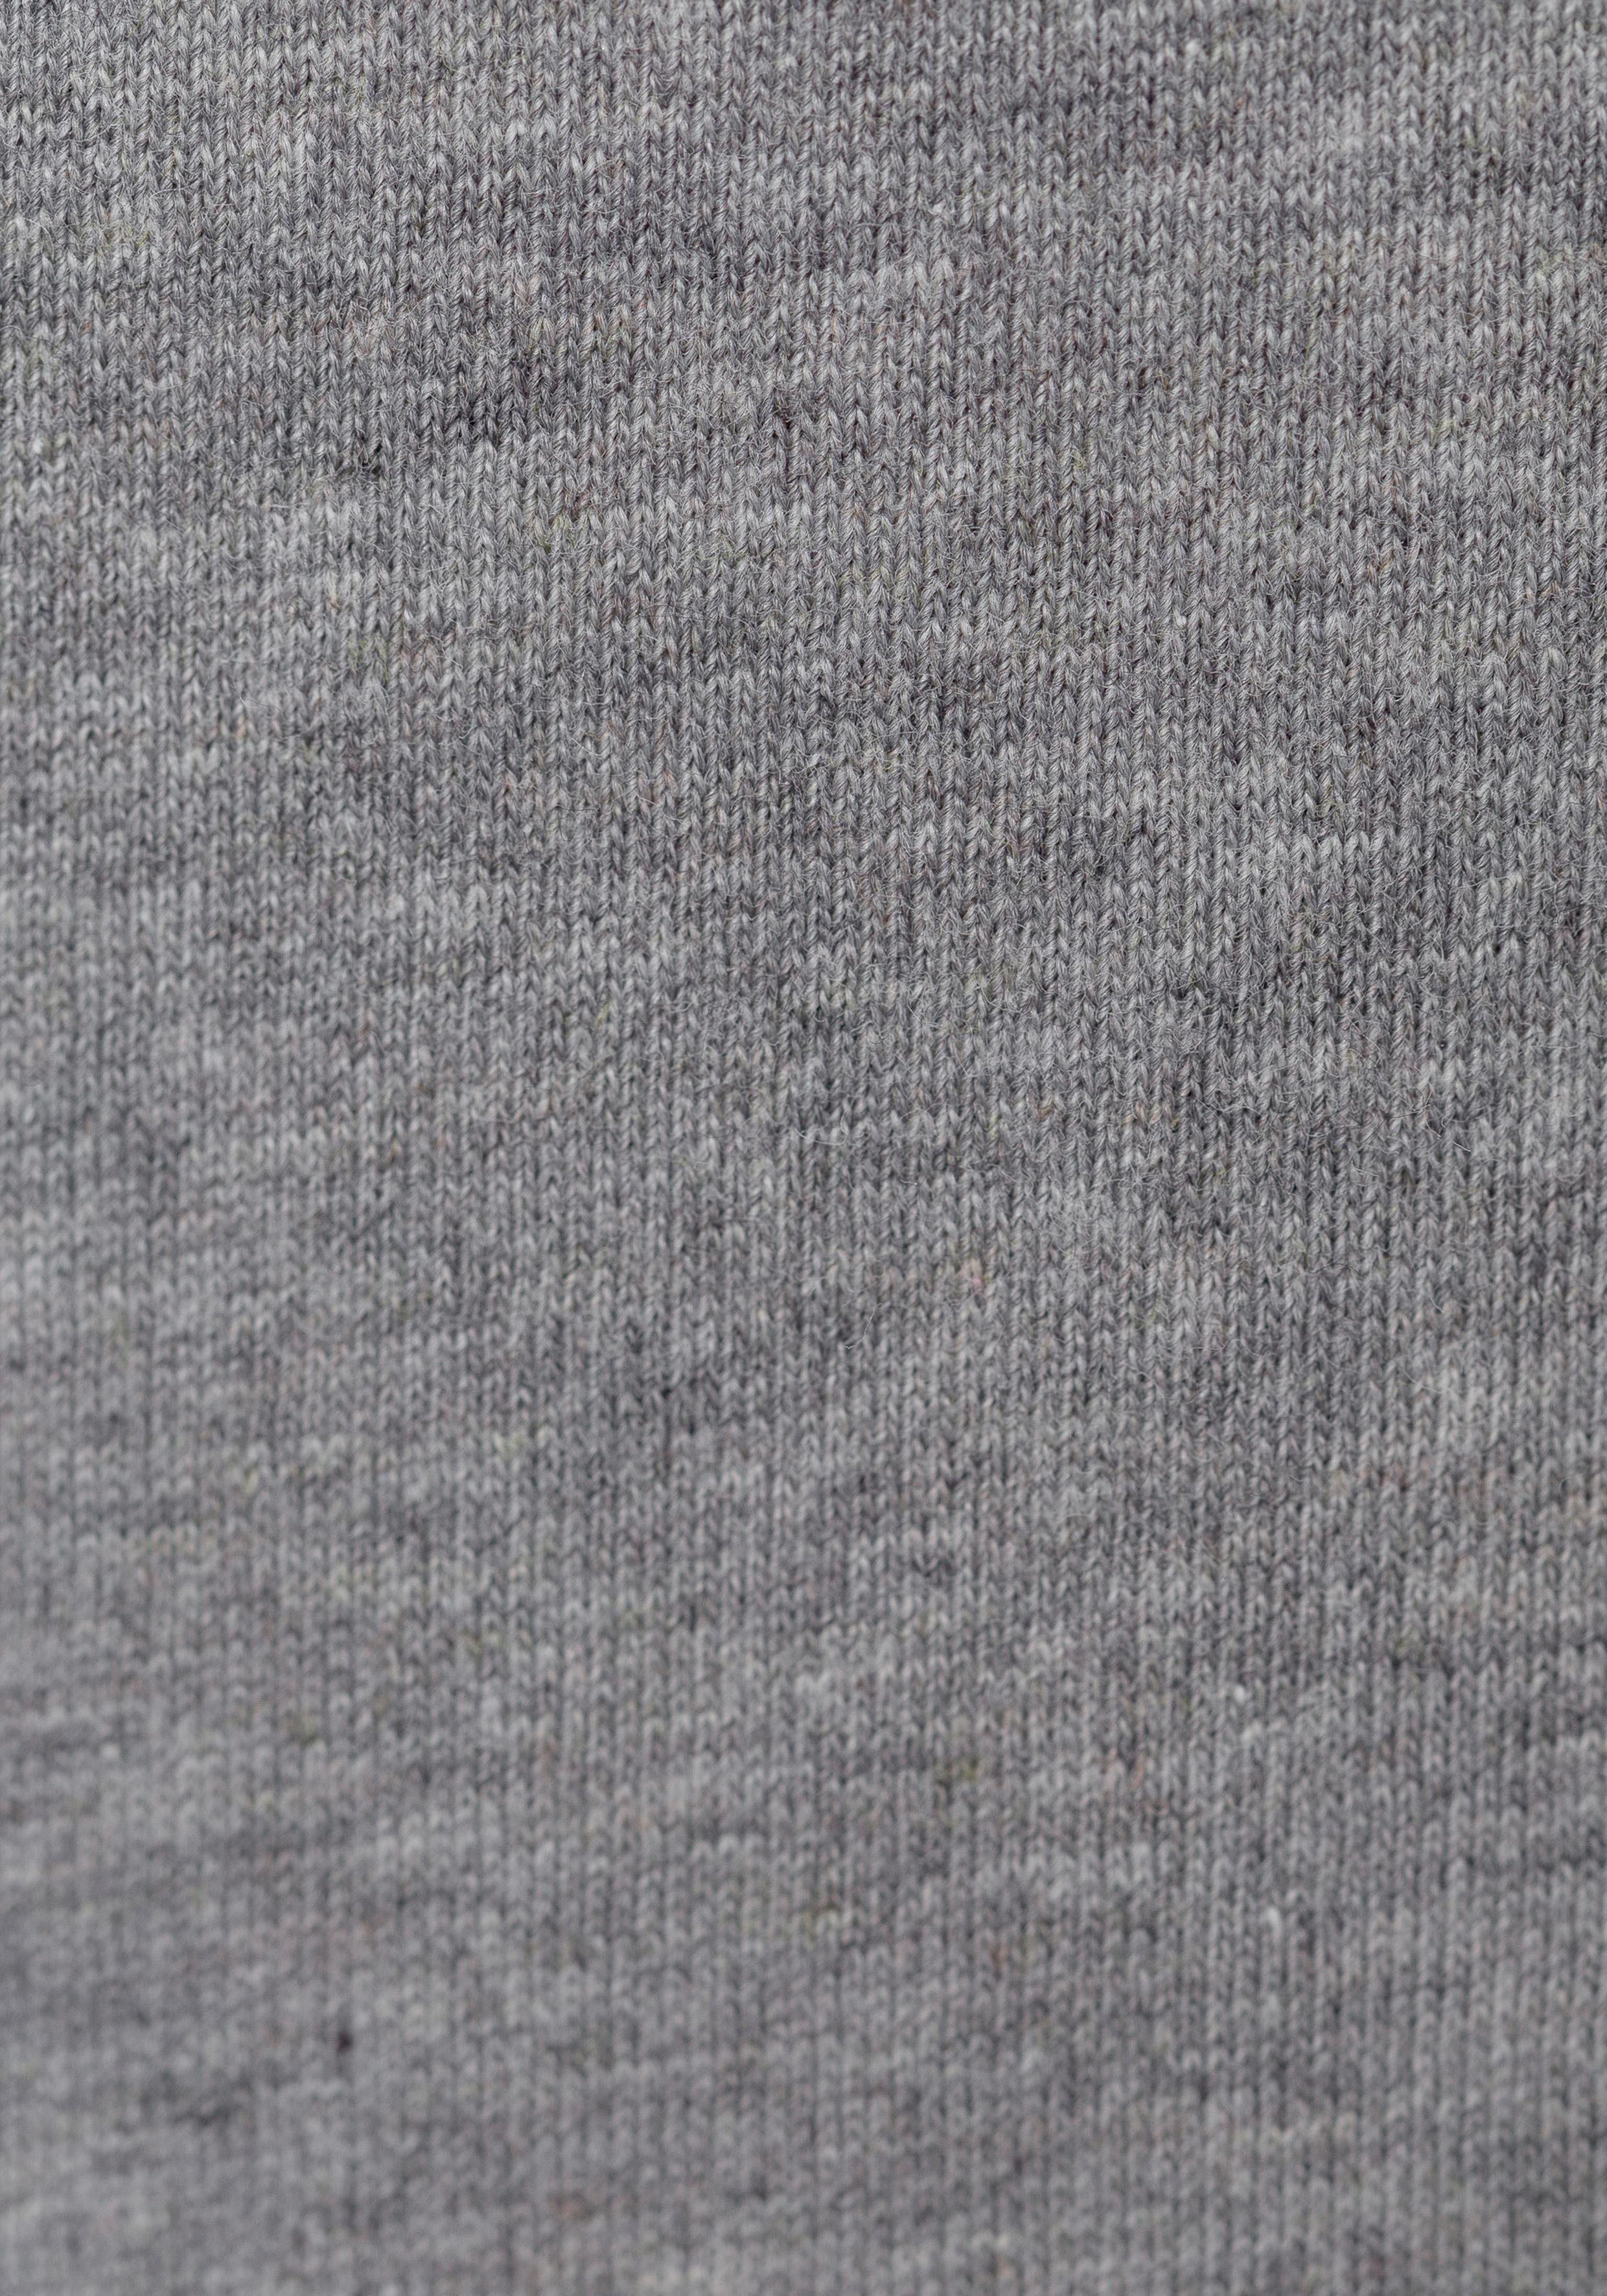 HUGO BOSS T-Shirt schwarz (Packung) CO assorted pre-pack, grau-meliert, V-Shirt 3P VN